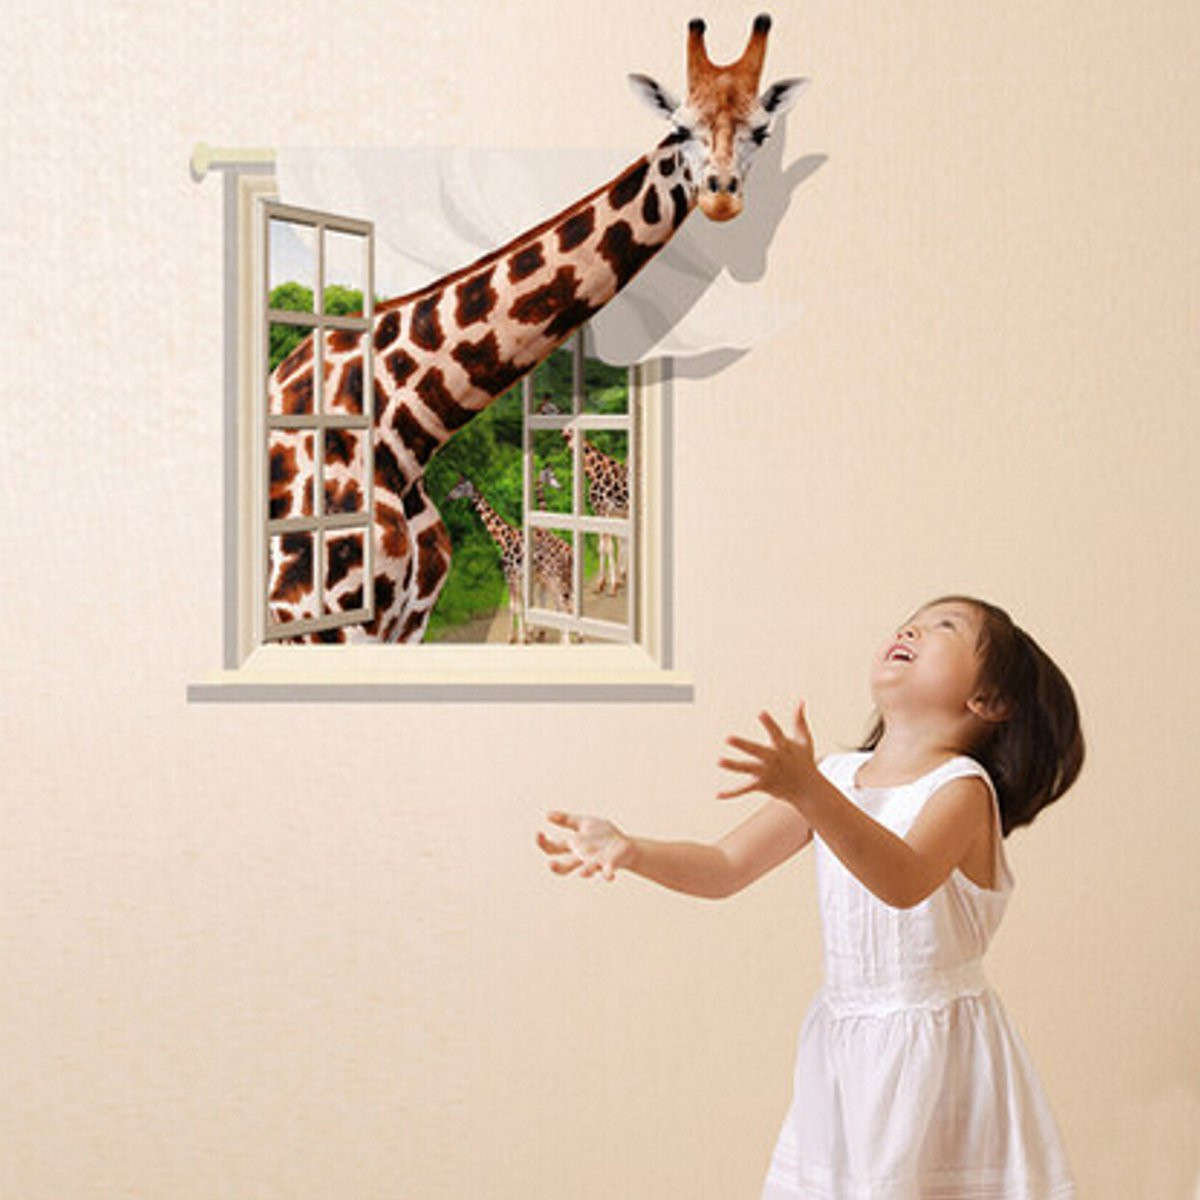 Giraffe Peeking Through Window , HD Wallpaper & Backgrounds